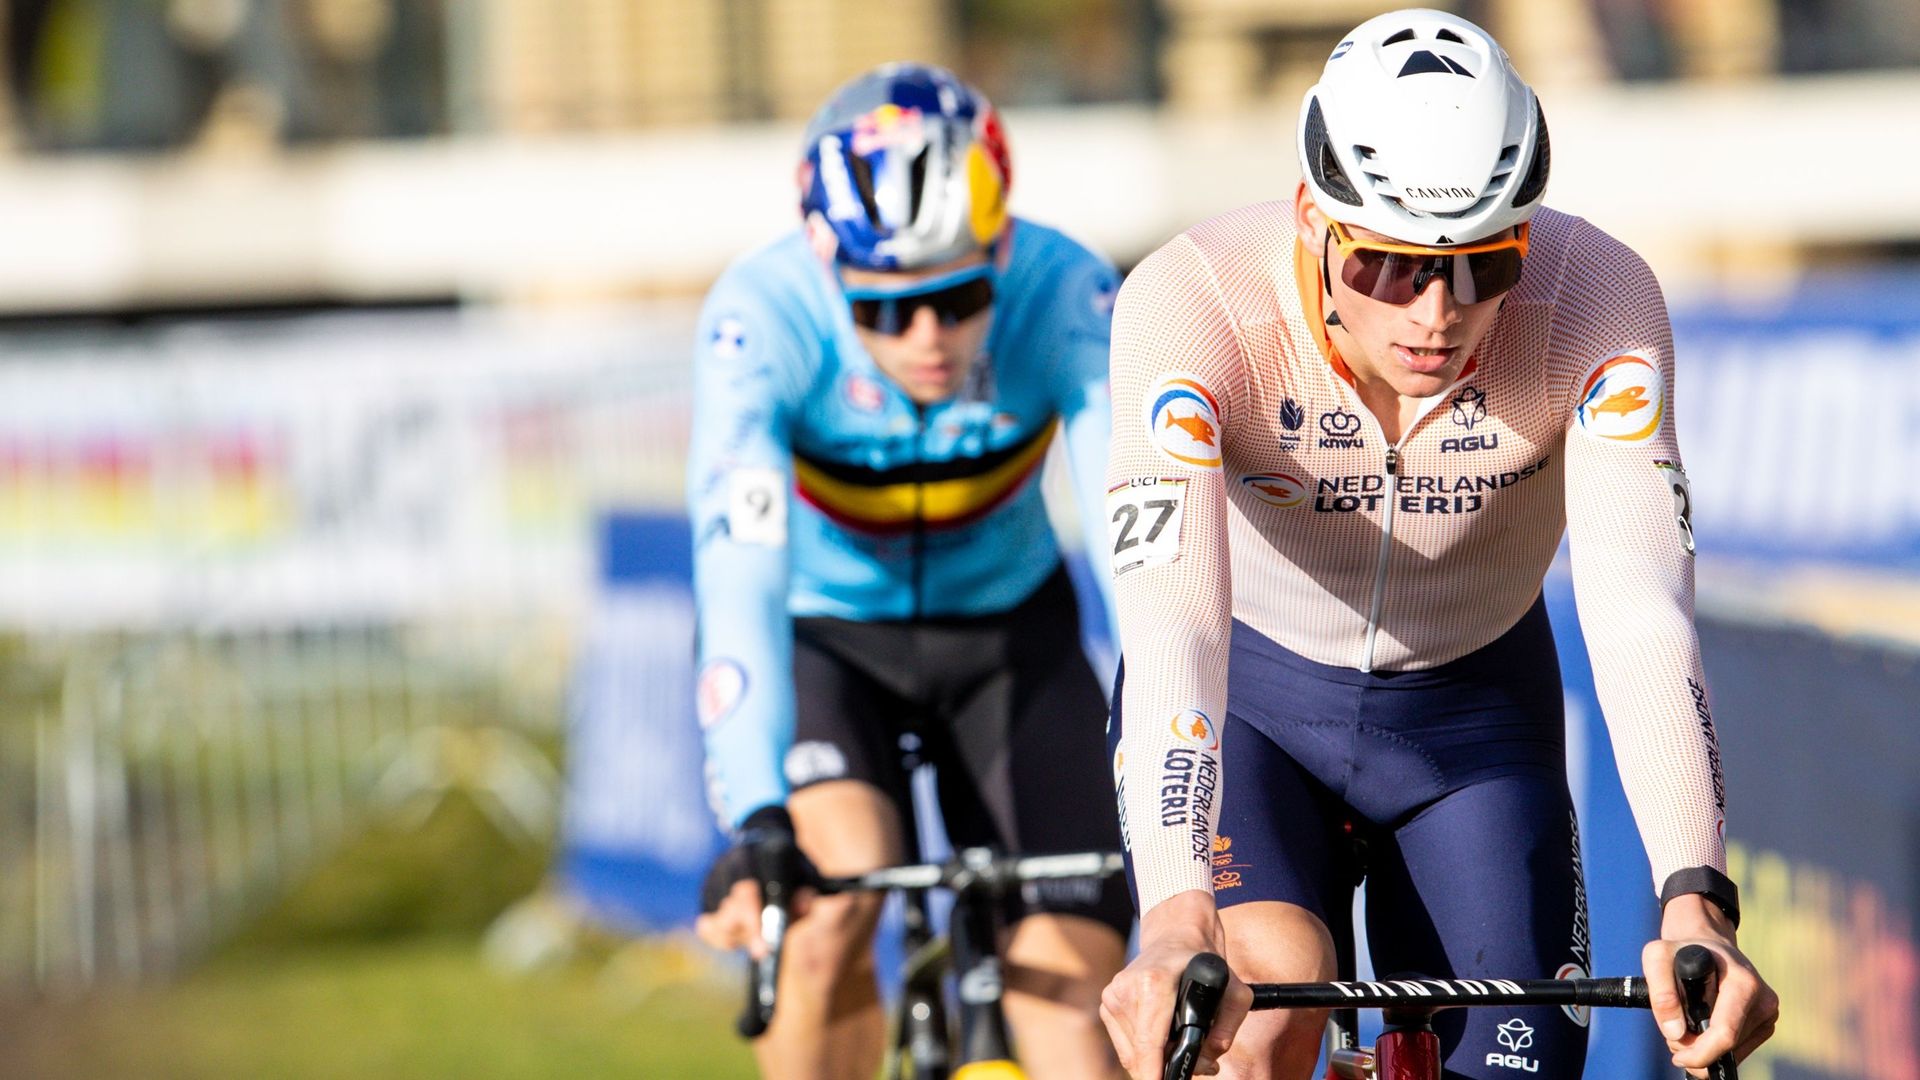 Mathieu van der Poel devance Wout van Aert durant les Championnats du monde de cyclocross.